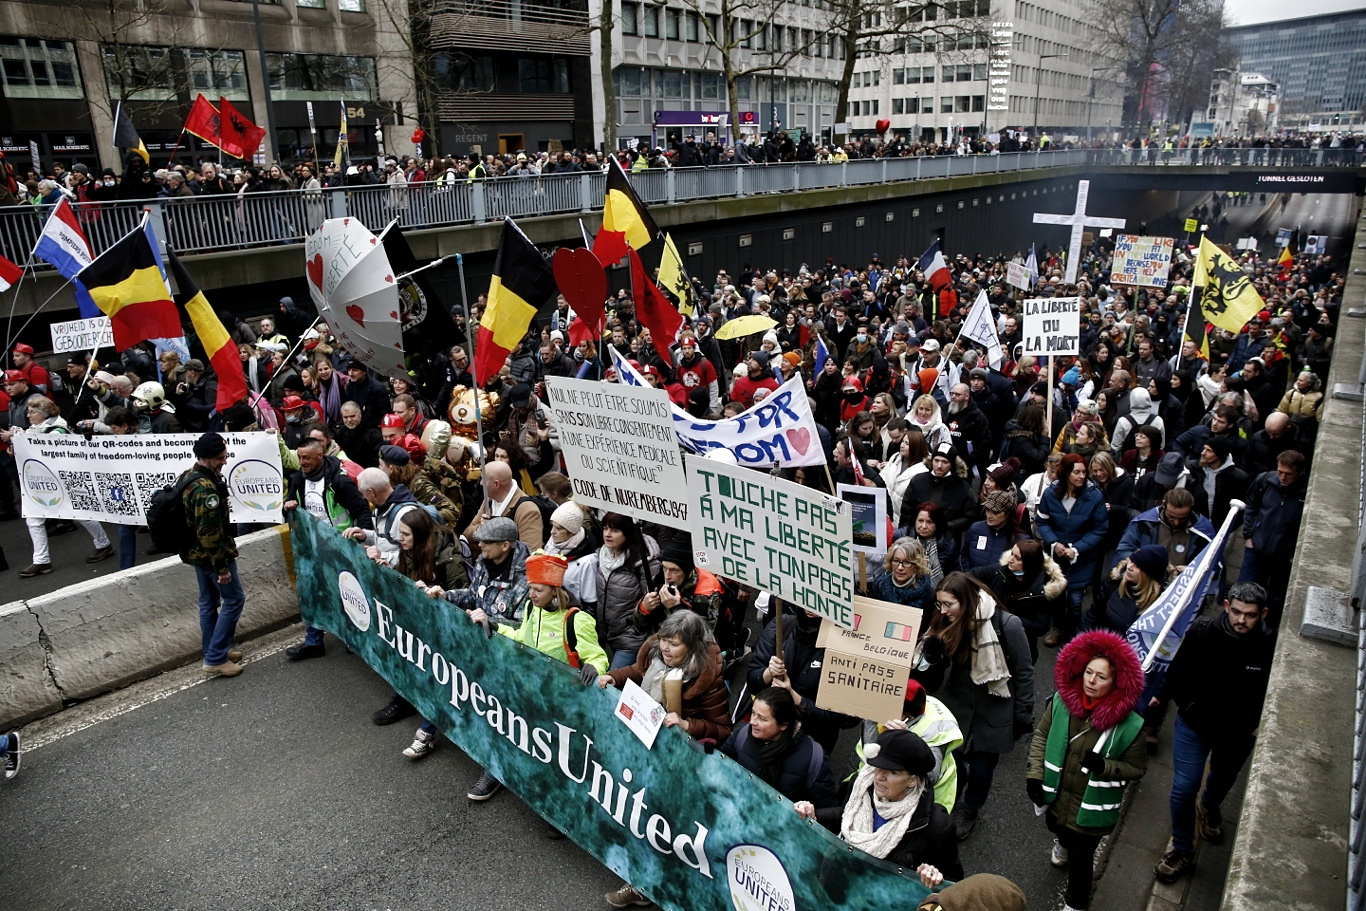 50 хил. тълпа излезе на протест срещу К-19 мерките в Брюксел, полицията реагира брутално ВИДЕО